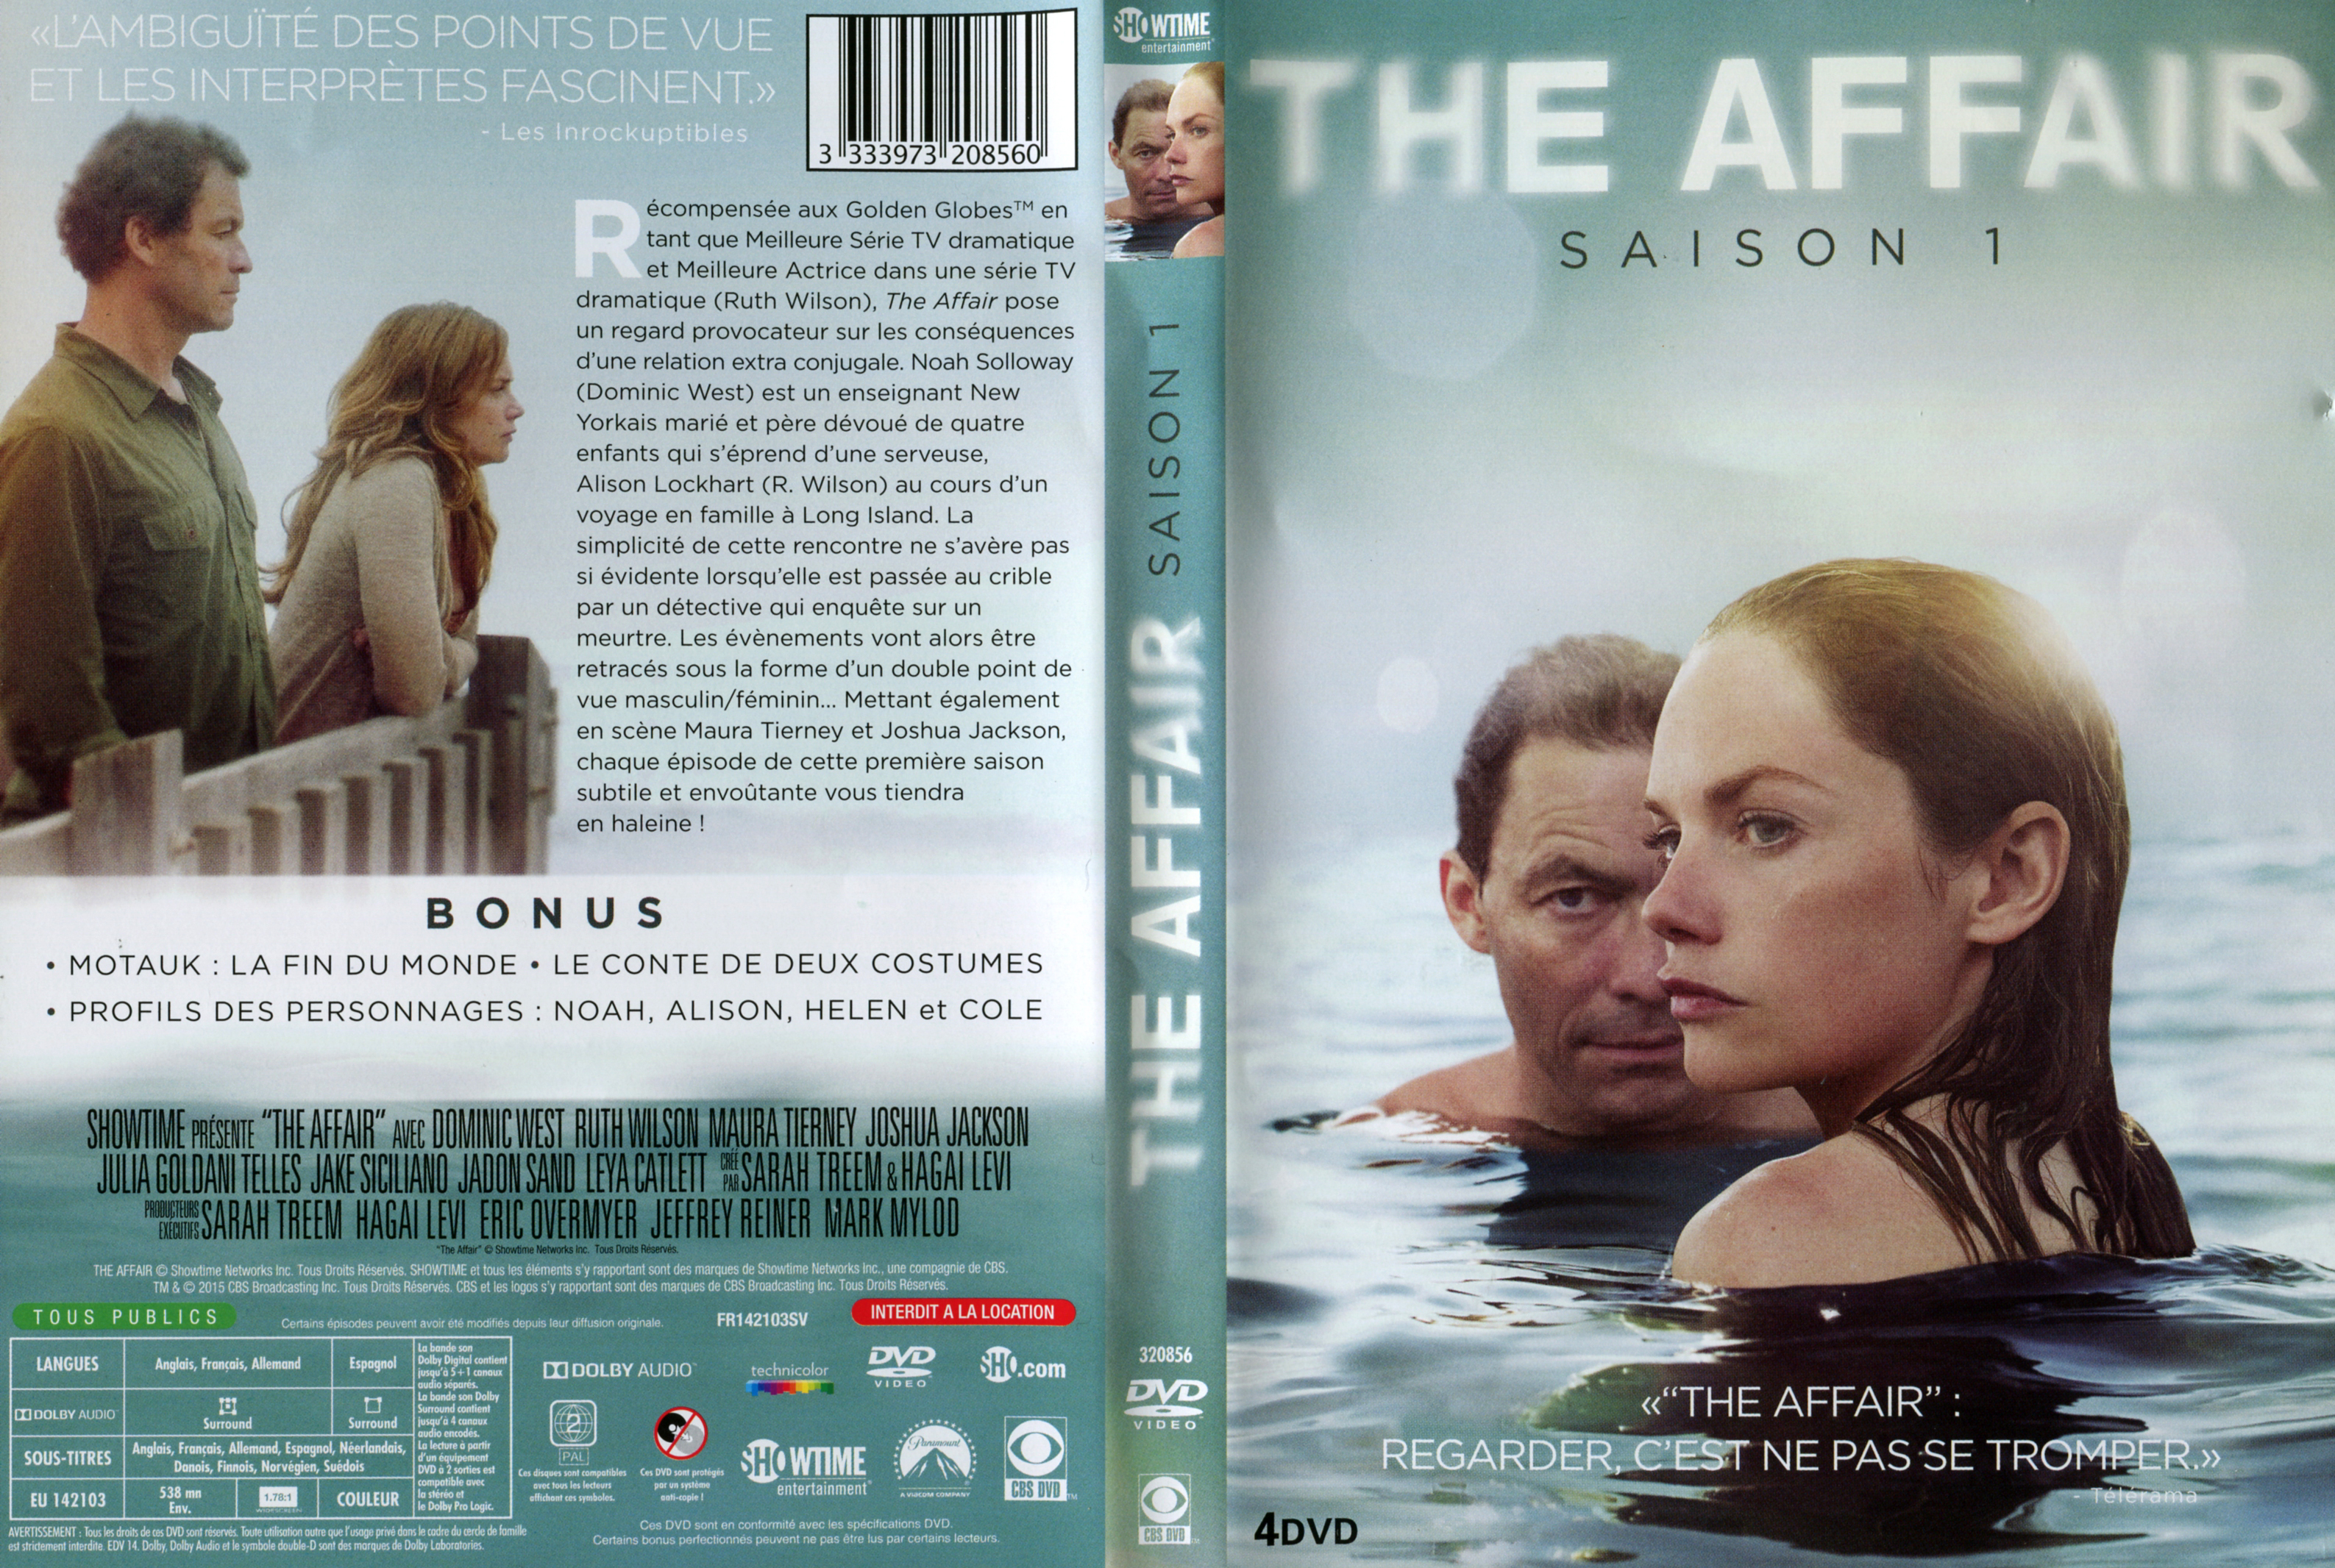 Jaquette DVD The affair saison 1